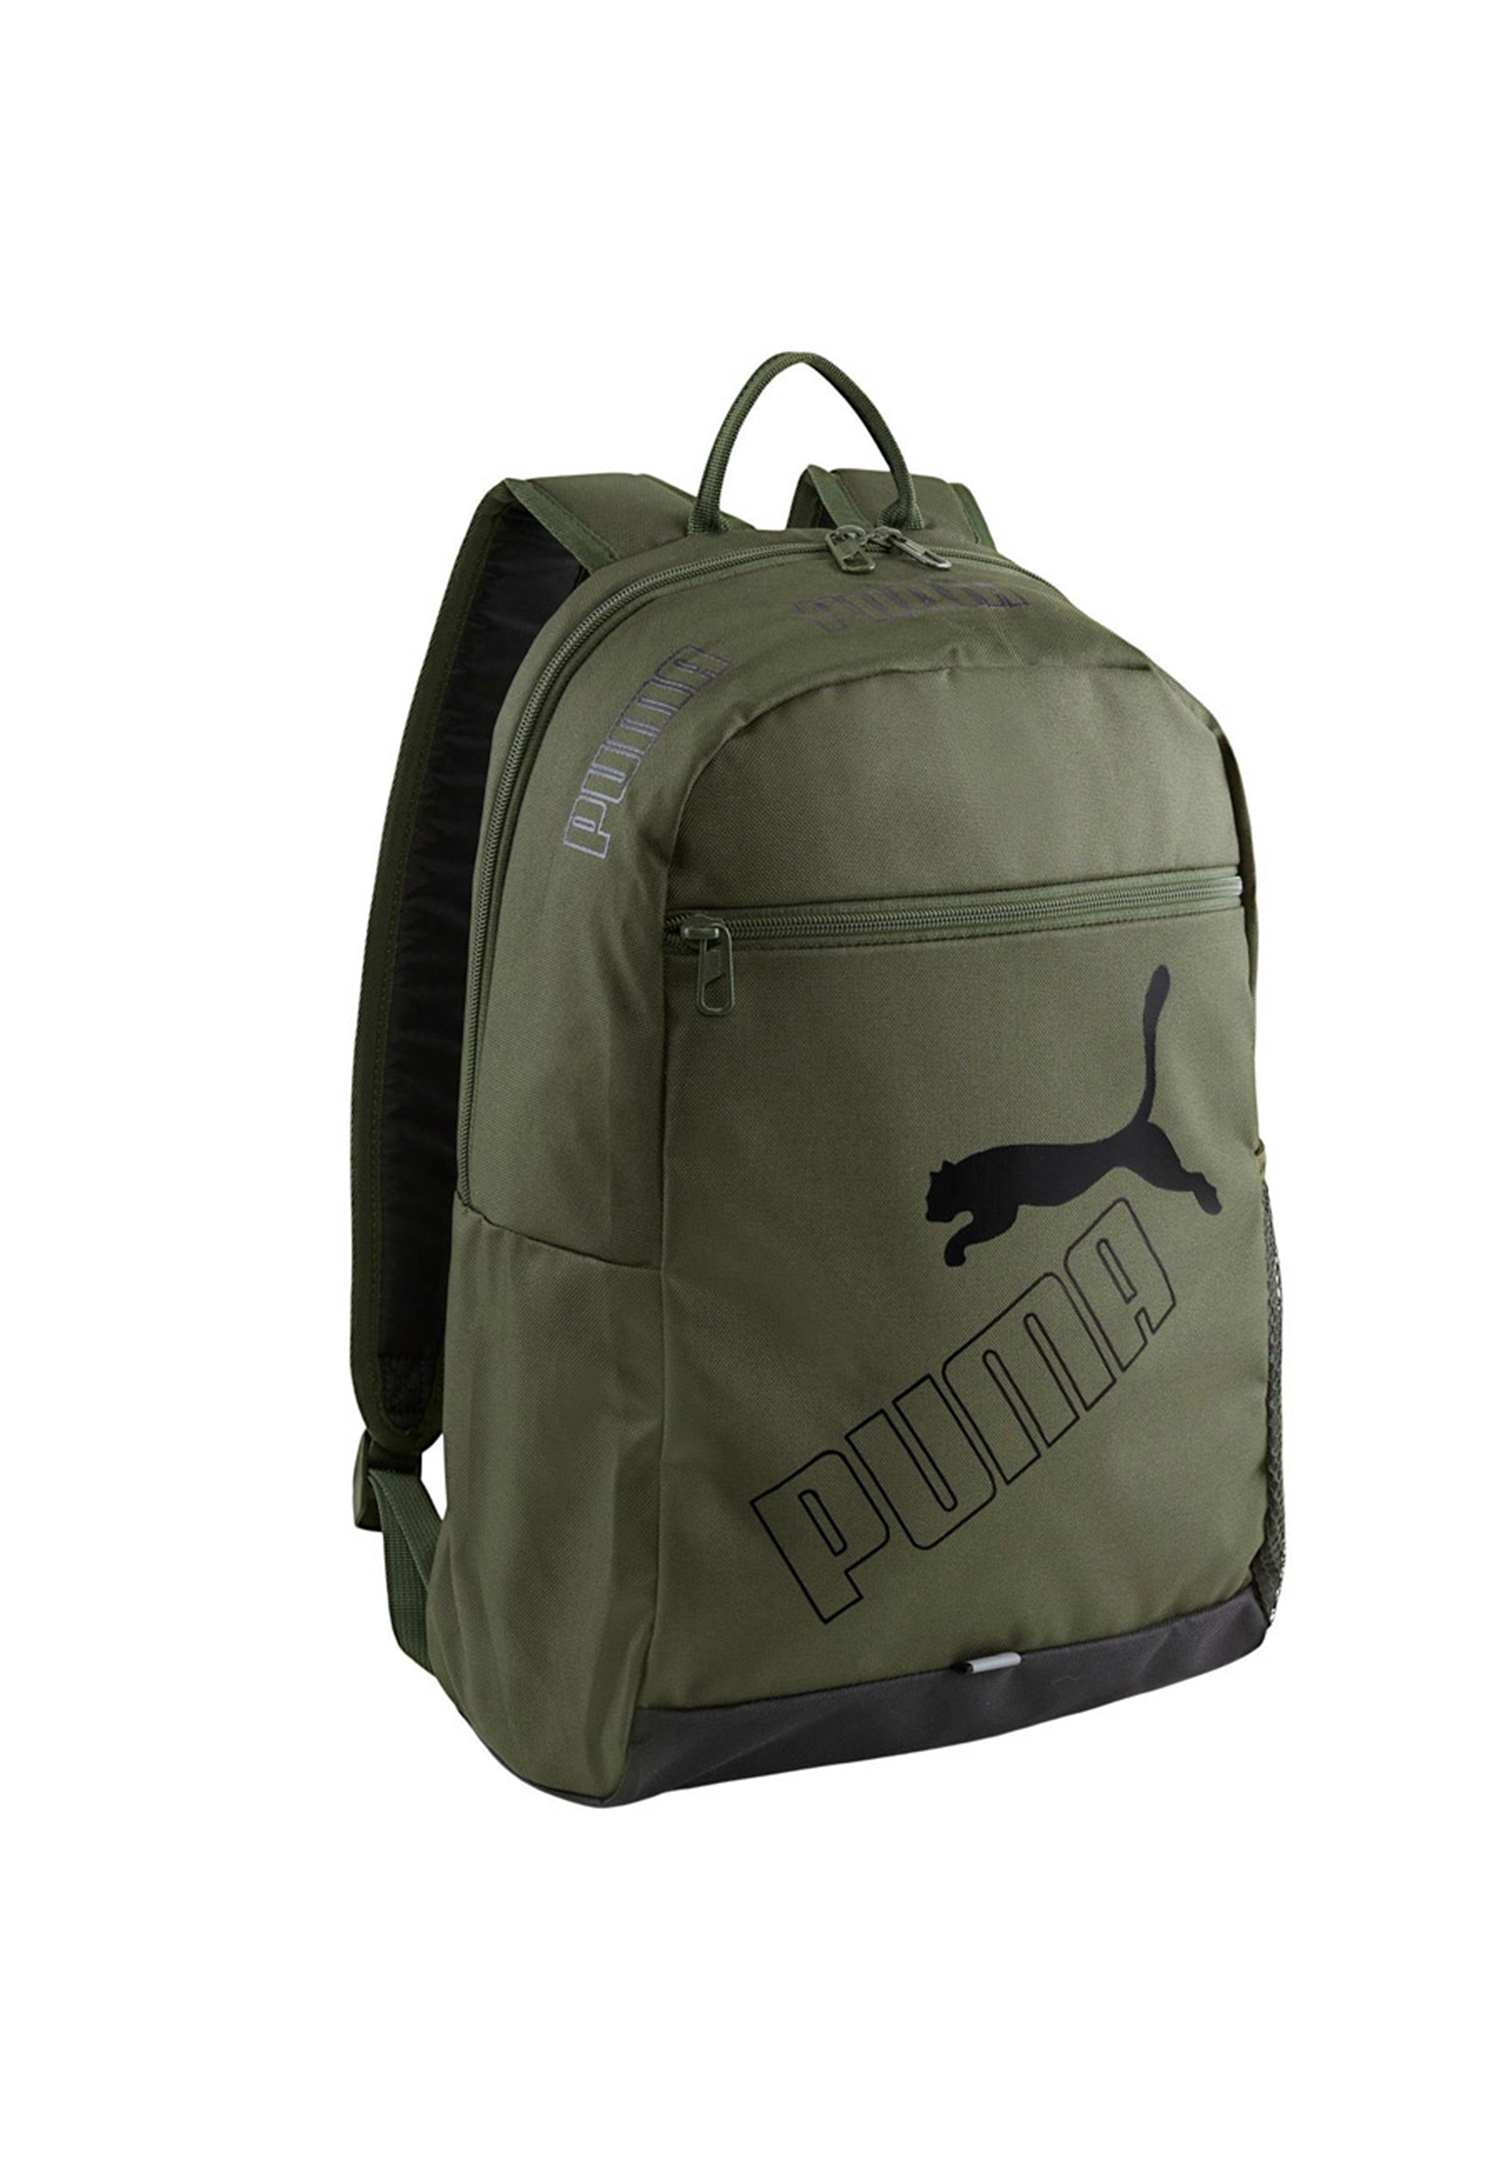 PUMA Phase Backpack II Rucksack Sport Freizeit Reise Schule 079952 03 grün